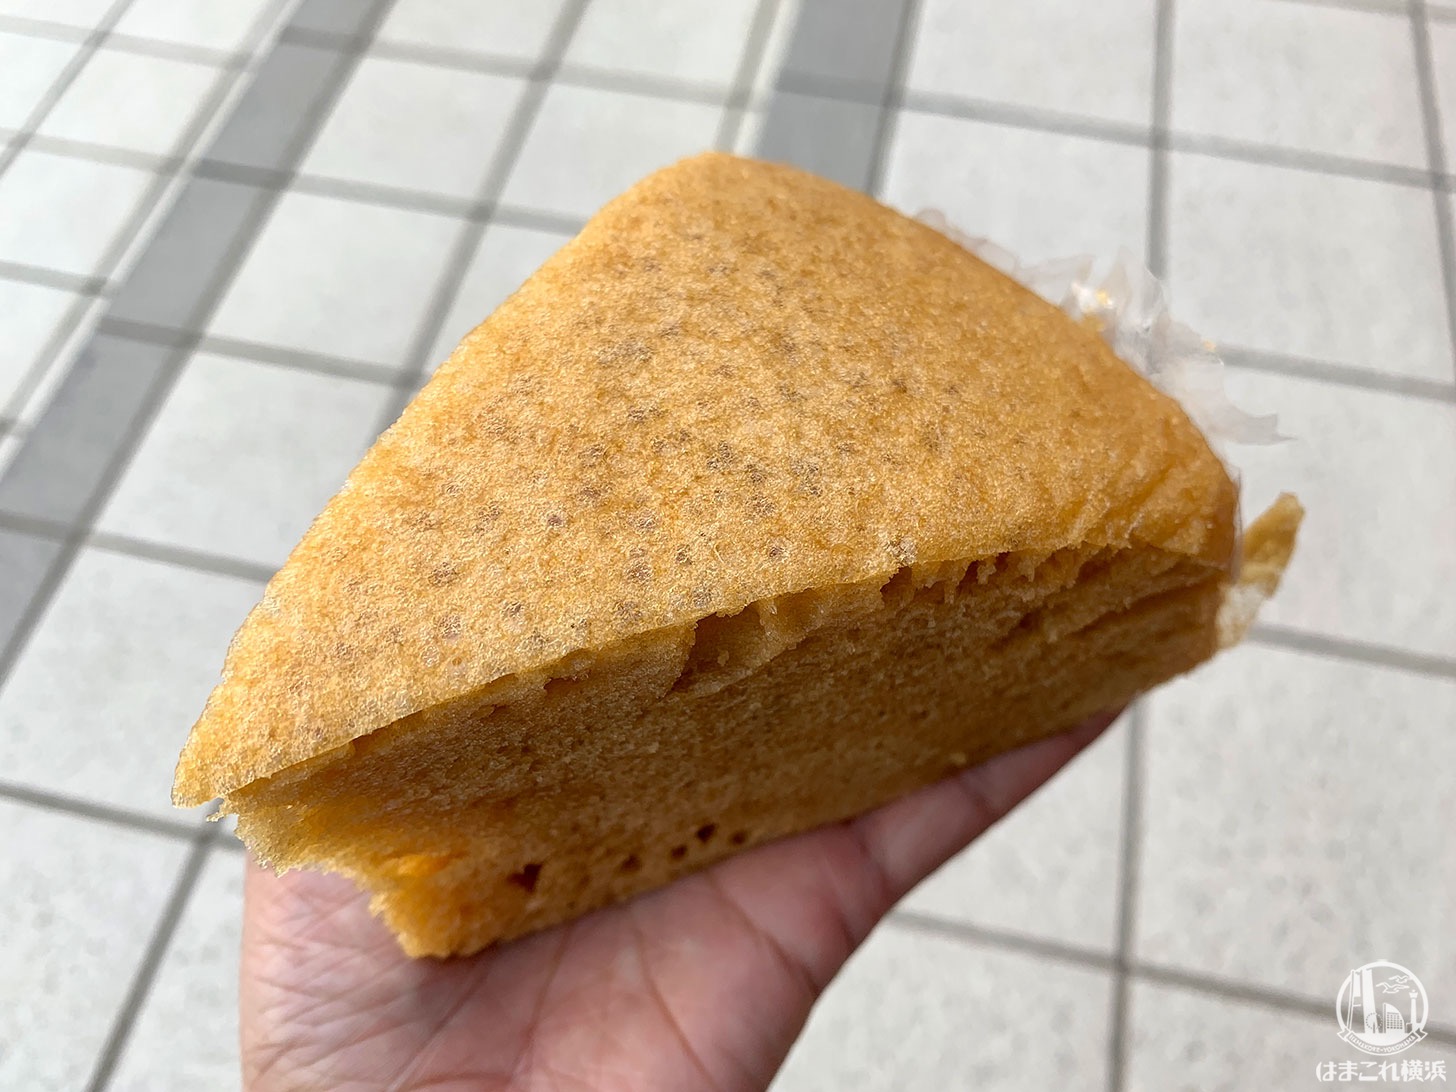 横浜中華街 聚楽 じゅらく のマーライコ食べ歩き 自家工場の中華菓子揃う はまこれ横浜